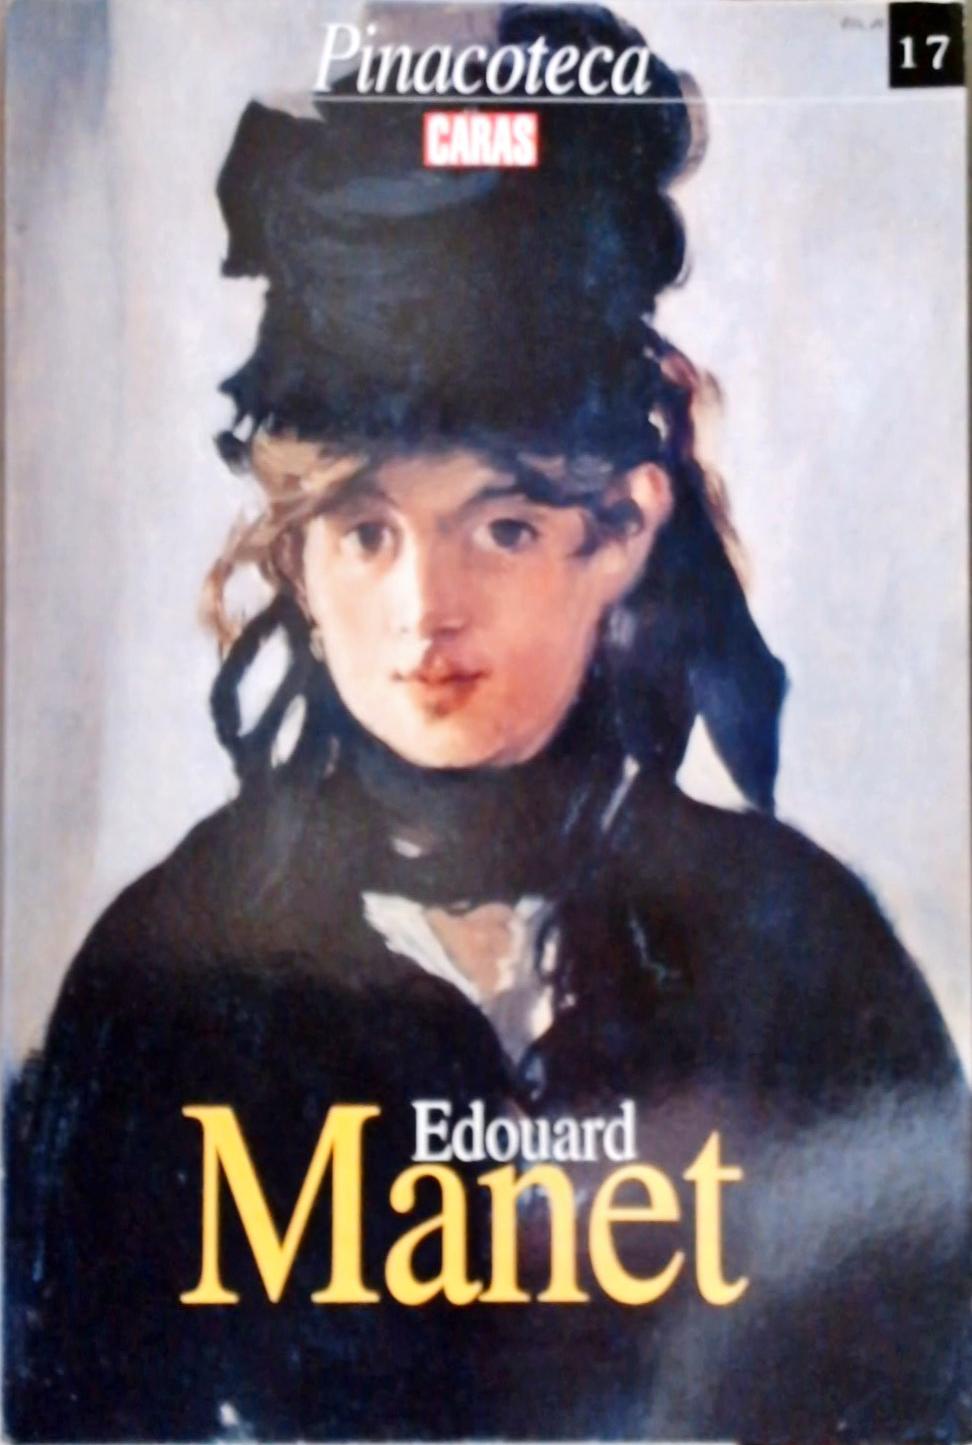 Pinacoteca Caras - Edouard Manet